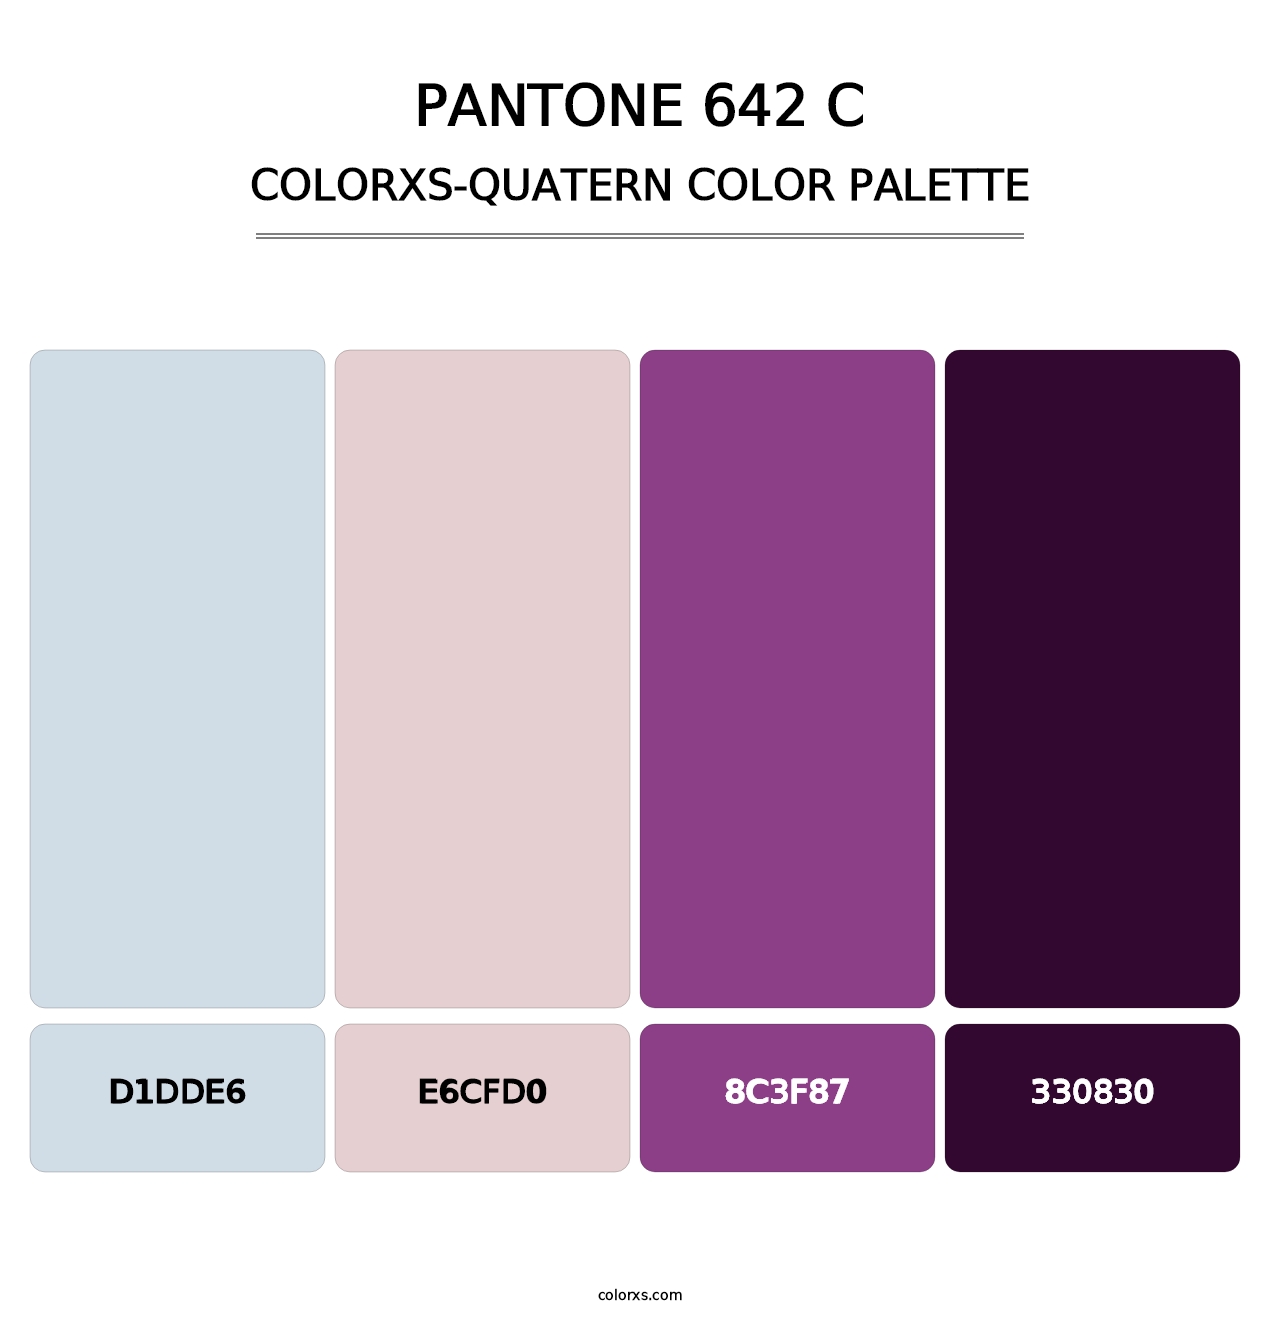 PANTONE 642 C - Colorxs Quatern Palette